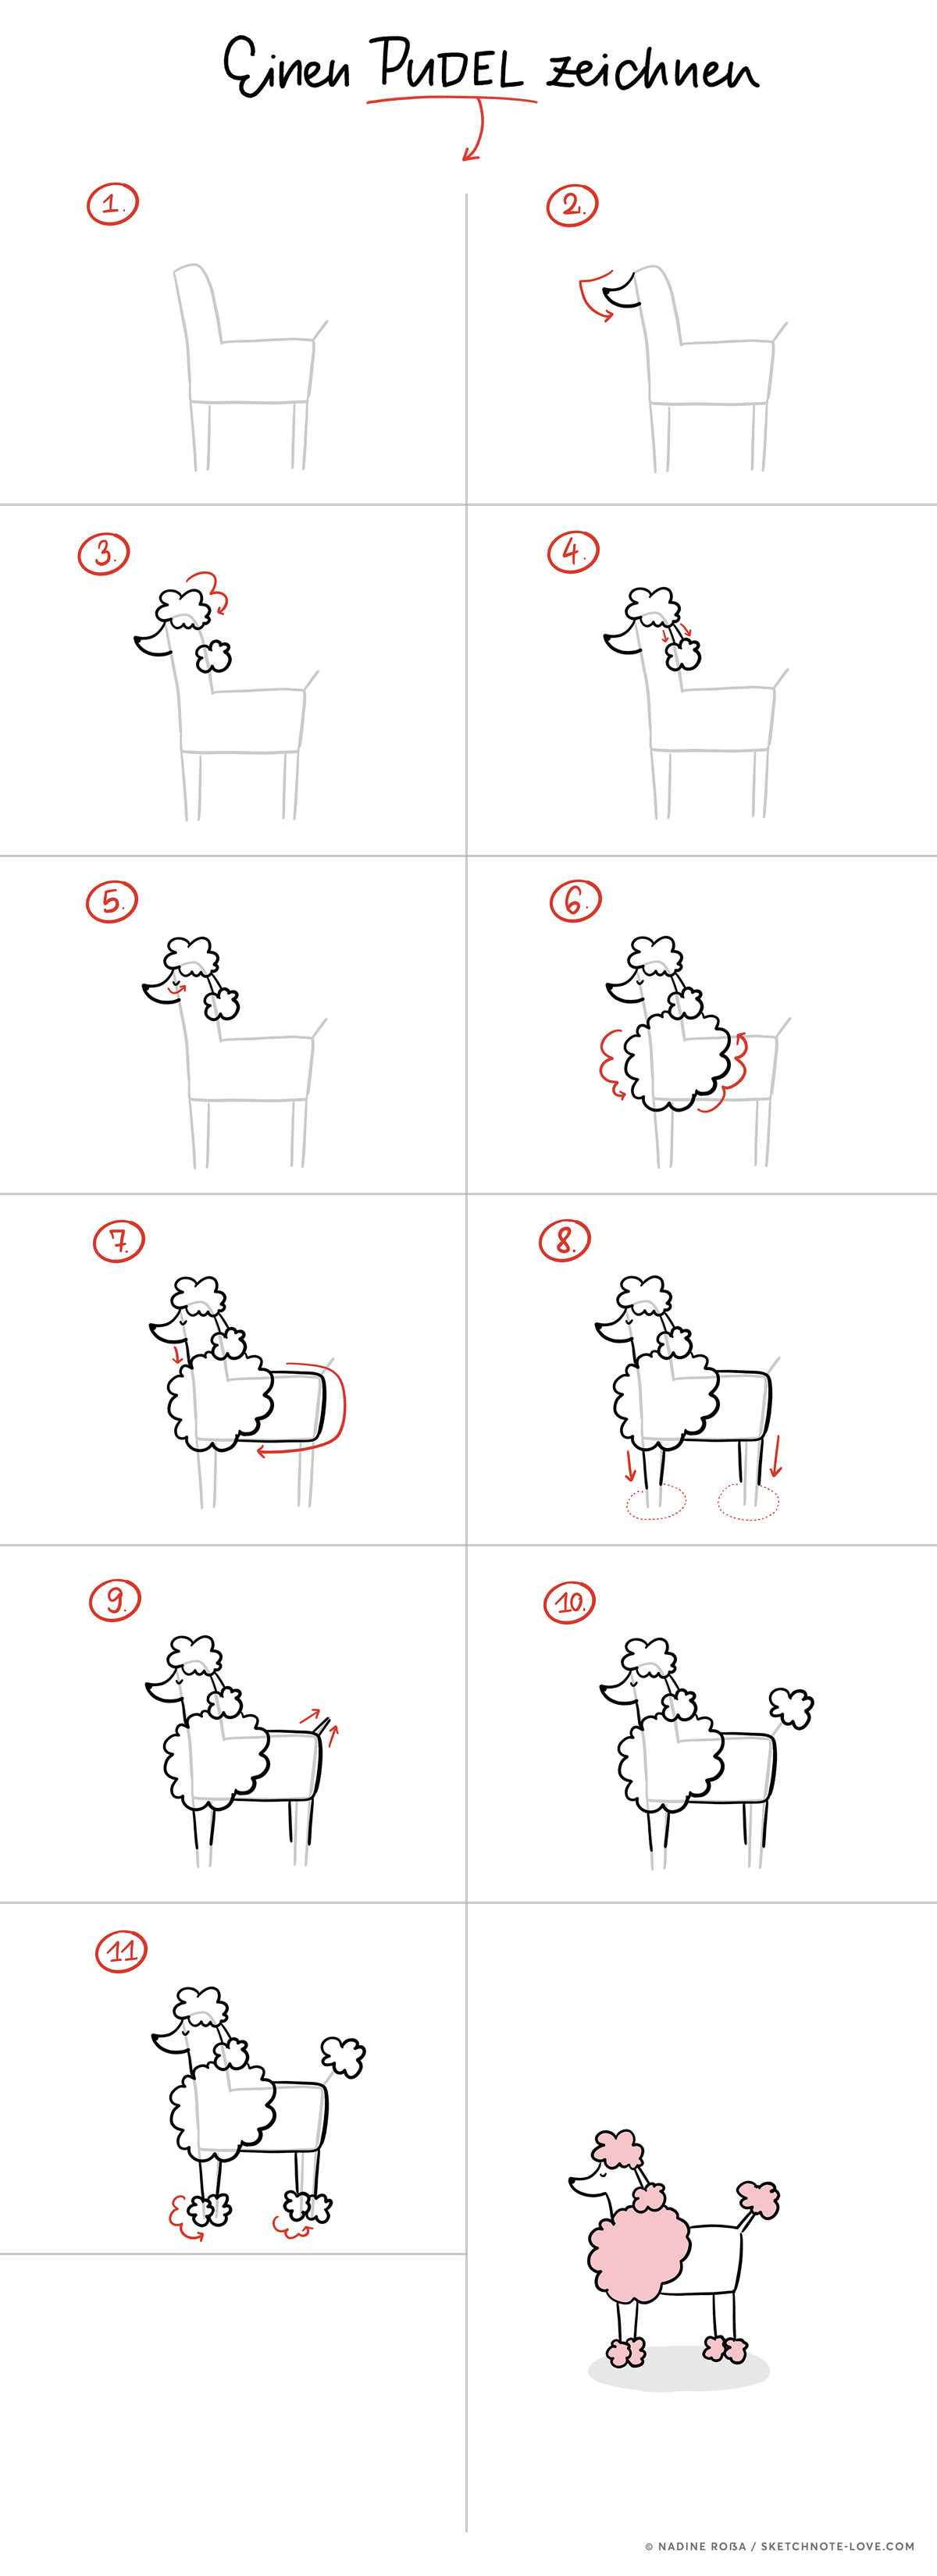 Einen Pudel zeichnen in wenigen Schritten – Zeichenanleitung